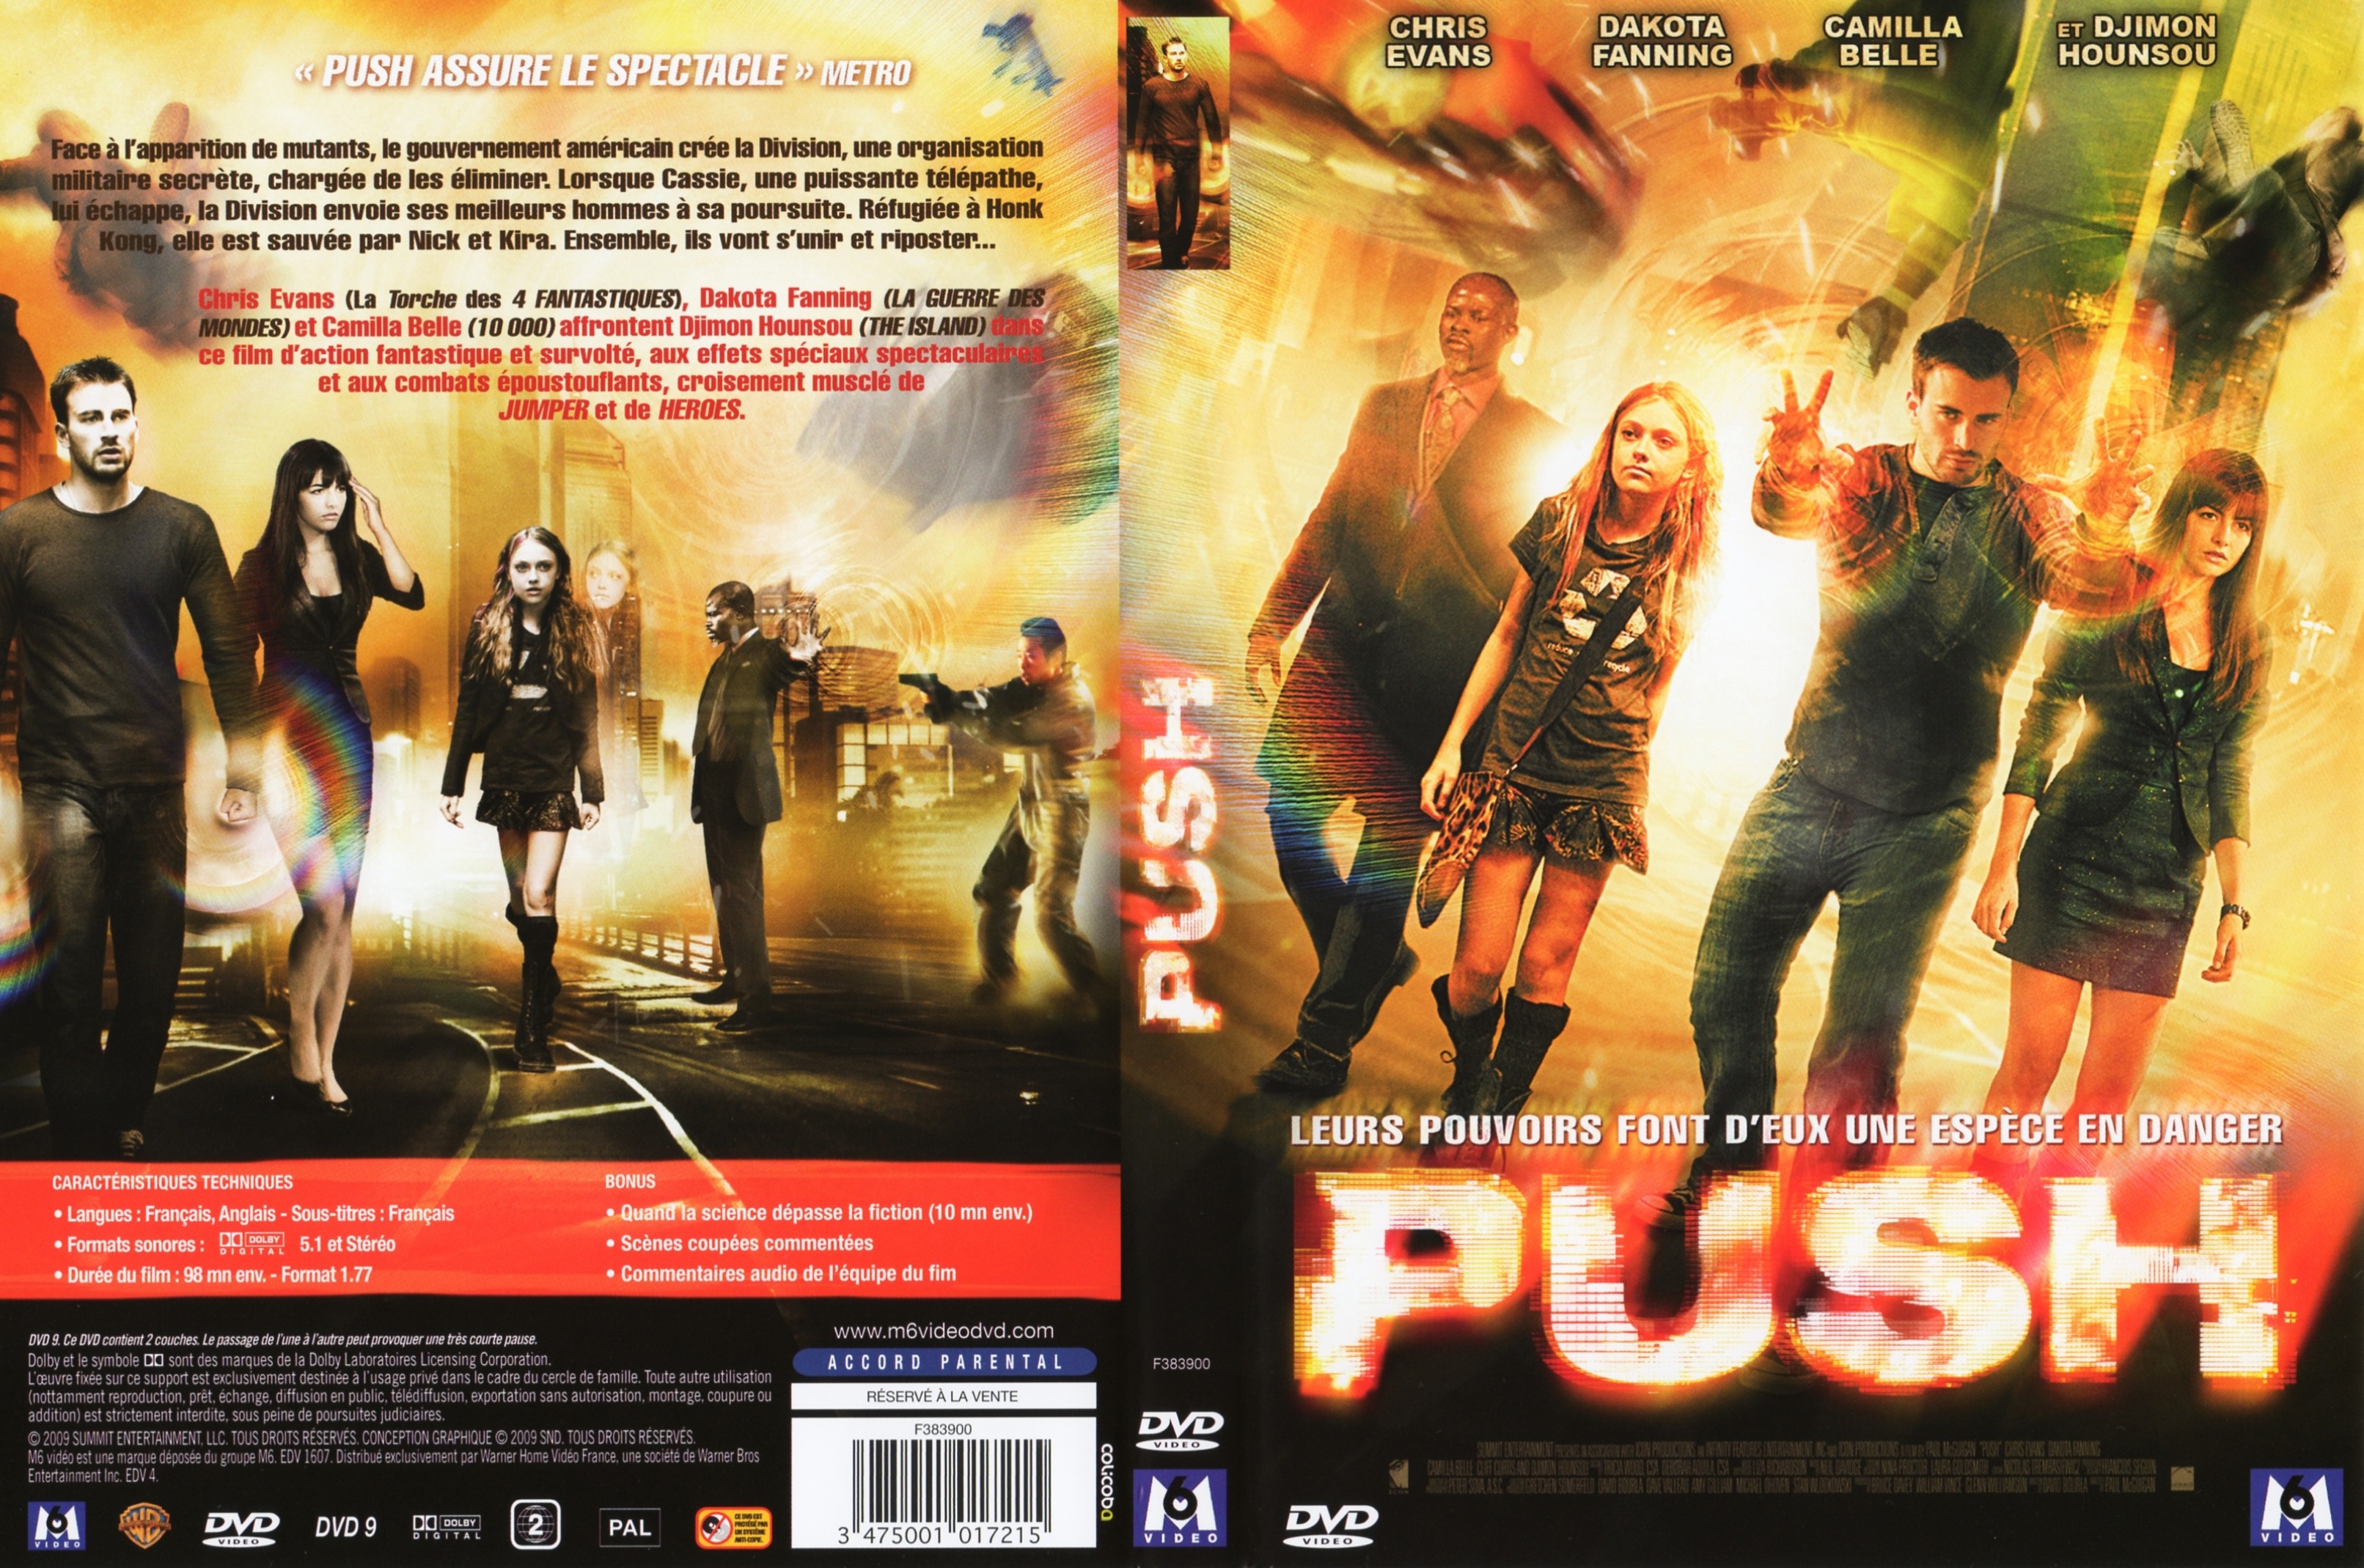 Jaquette DVD Push